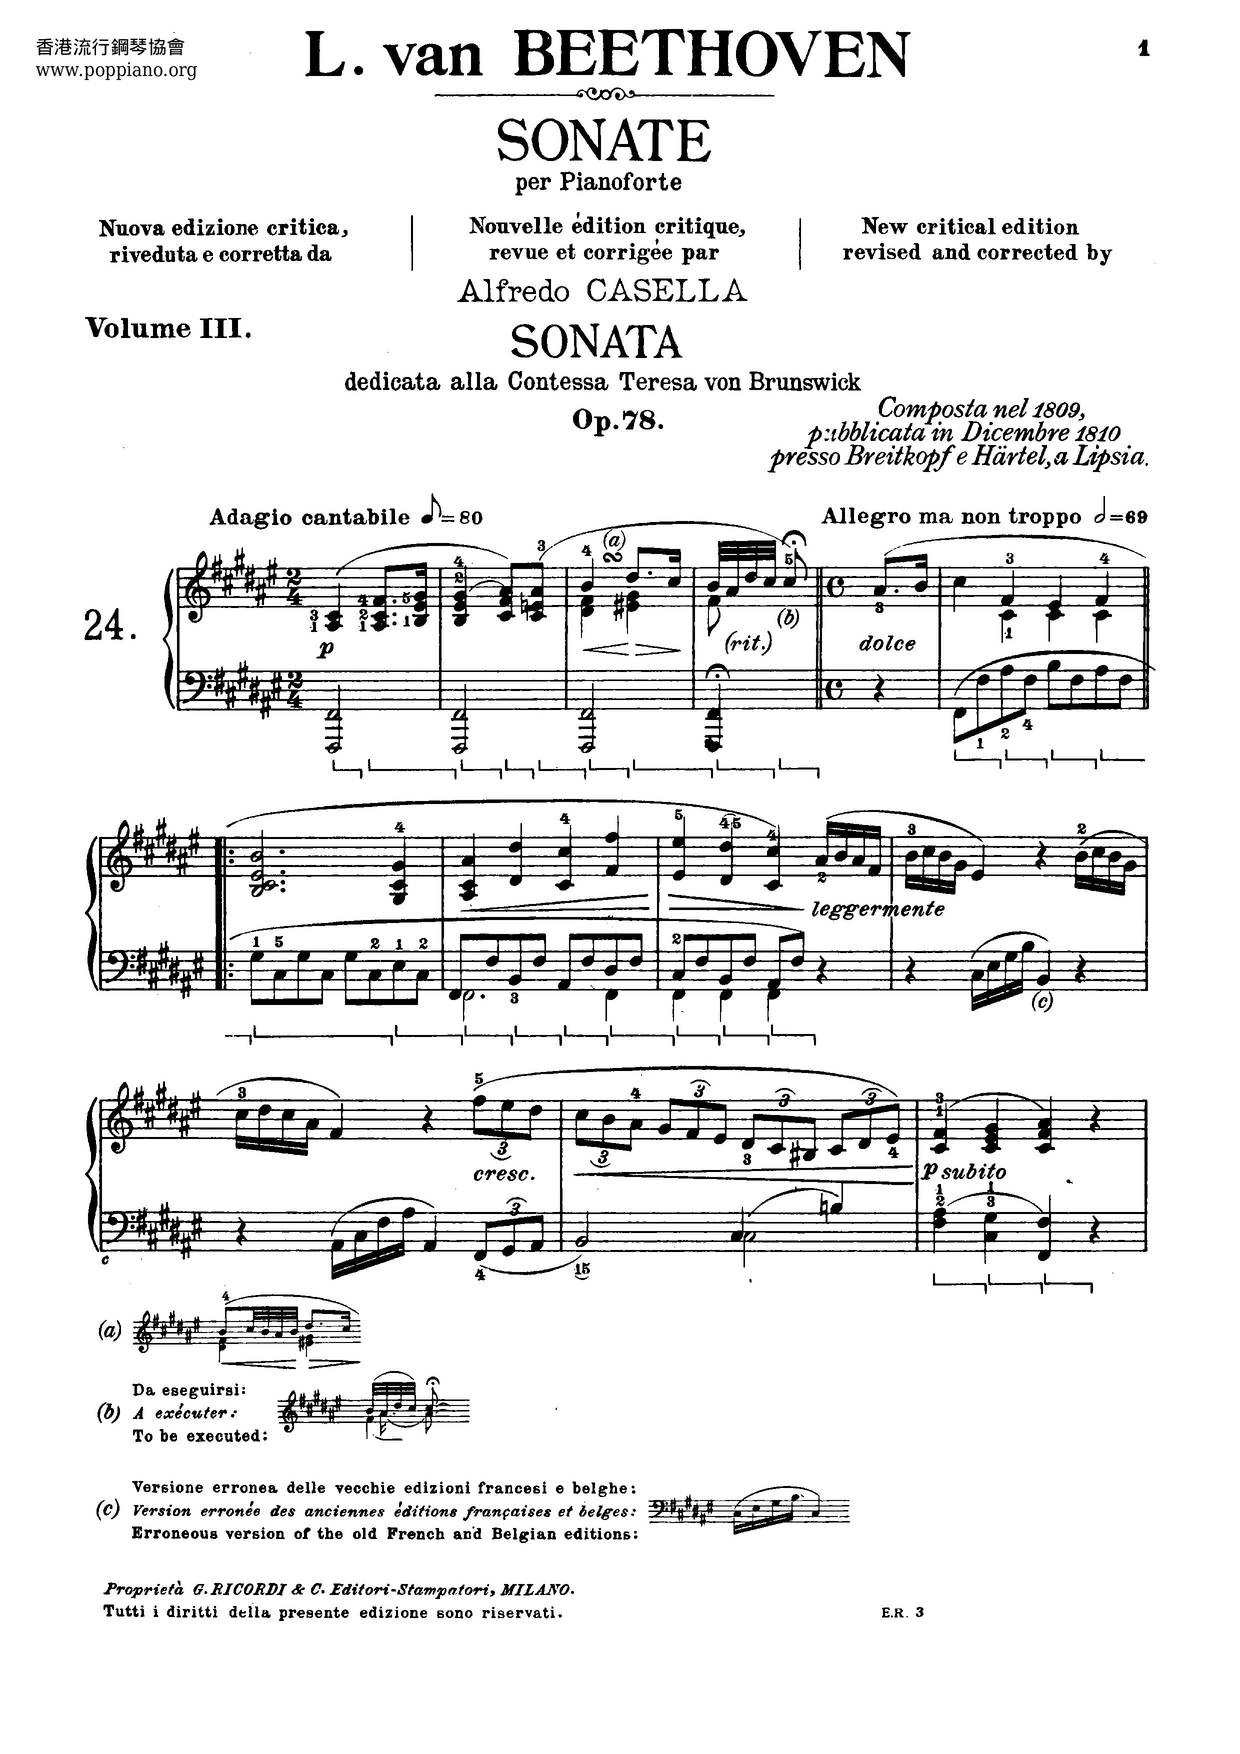 Complete Sonatas For Piano Score